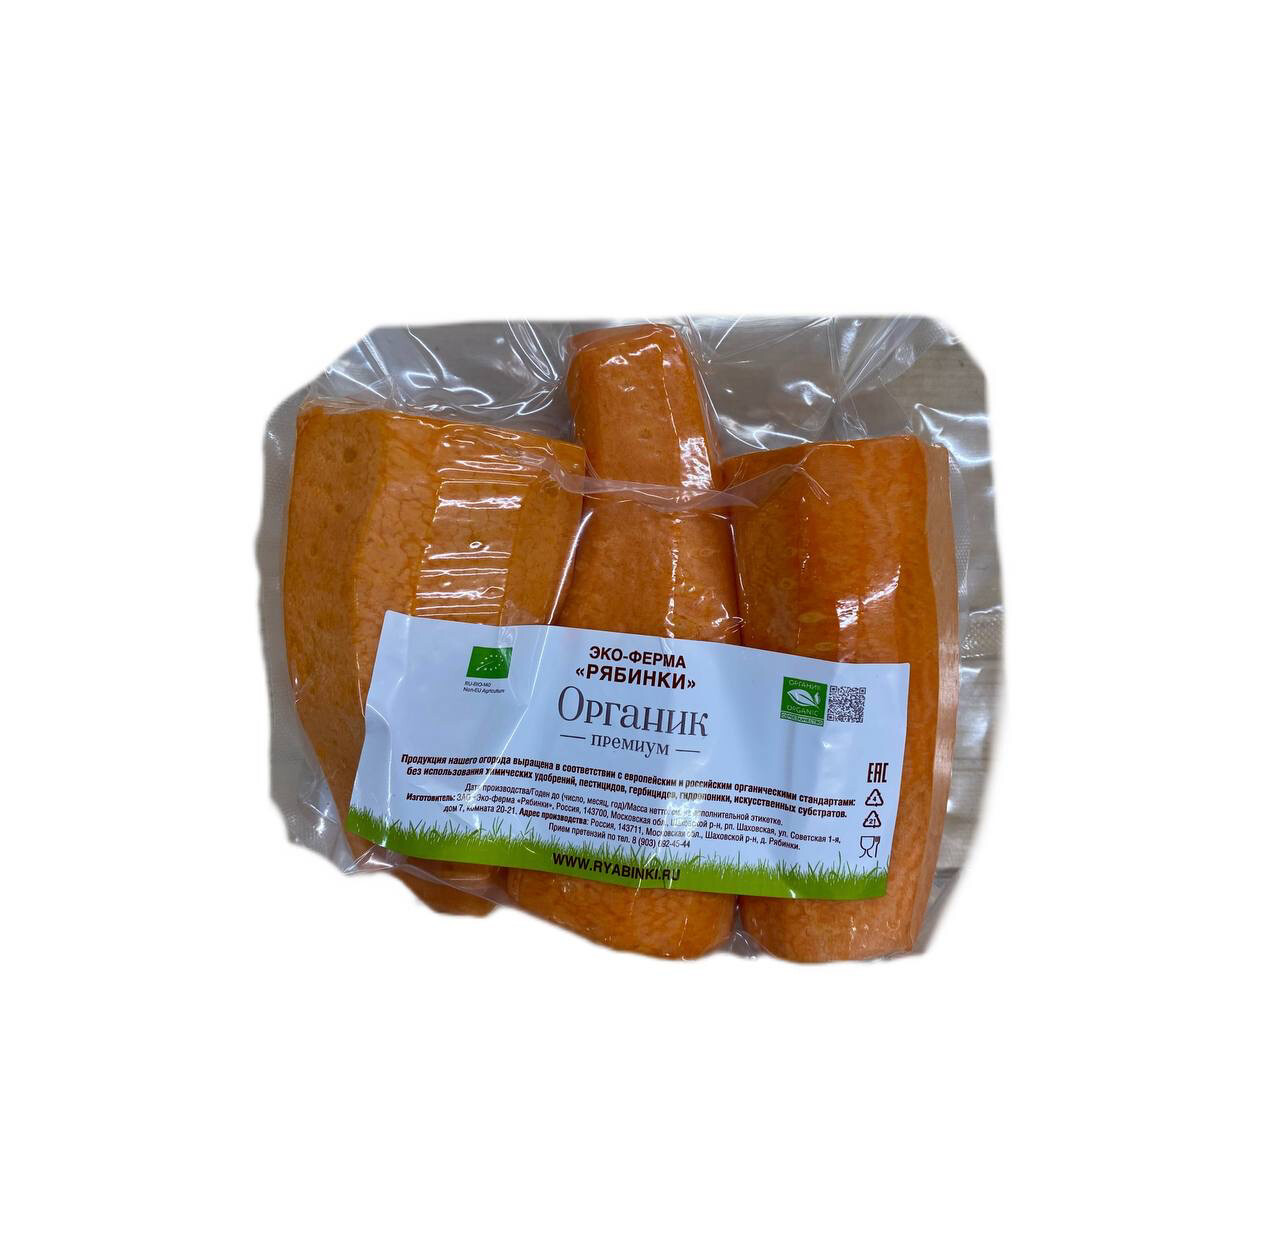 Морковь свежая очищенная в вакууме ОРГАНИК, Эко-ферма "Рябинки", 500 г